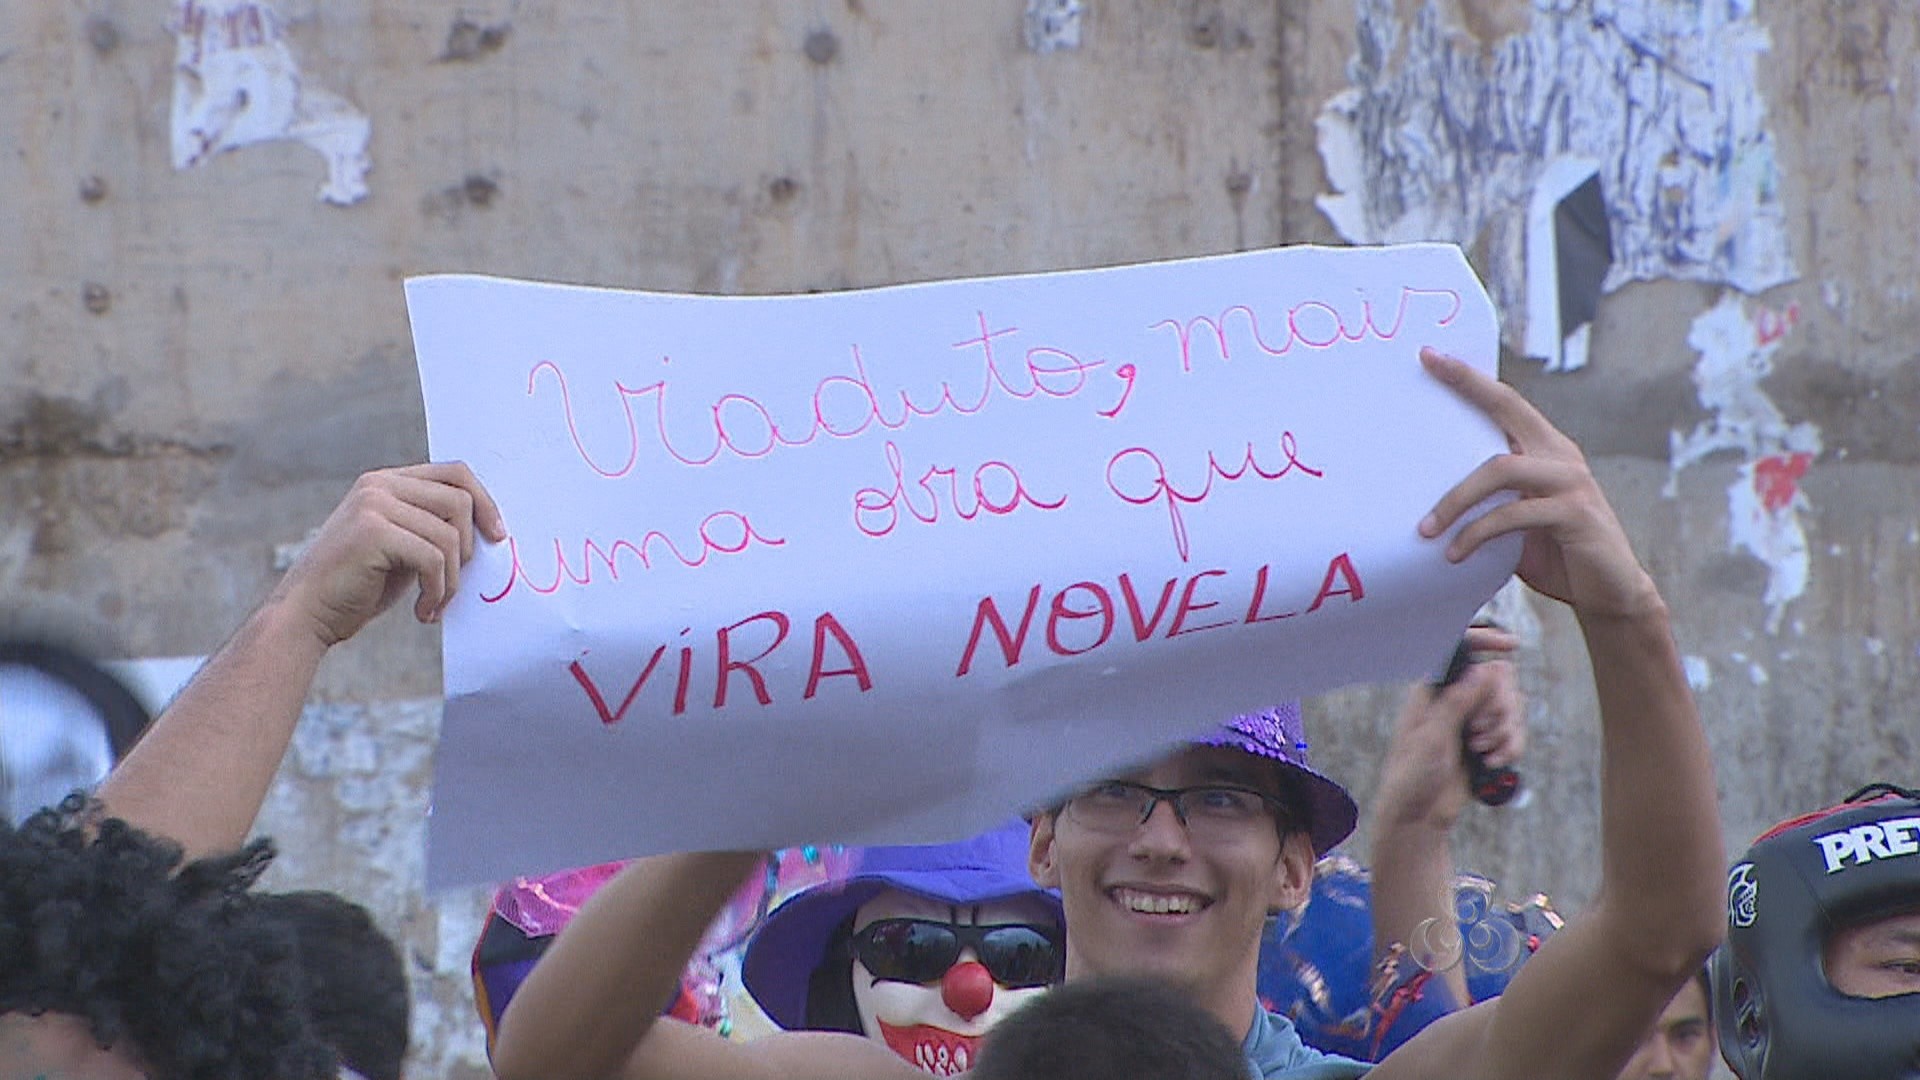 Criatividade chamou a atenção durante o protesto (Foto: Rondônia TV)